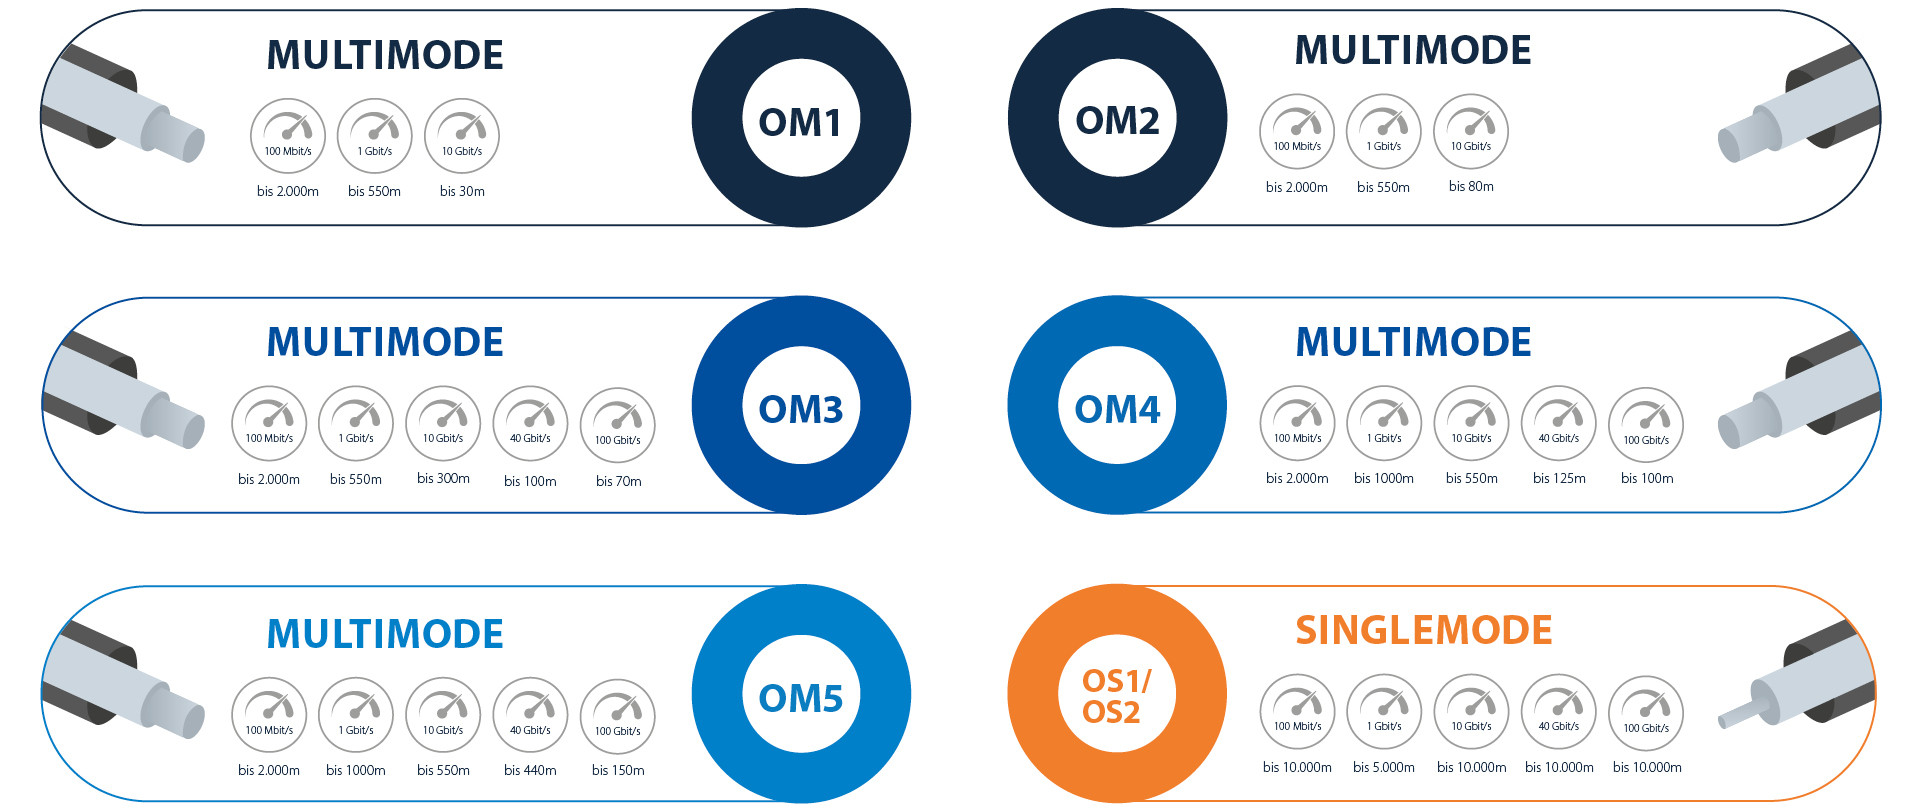 Vergleichsgrafik der Übertragungsraten und Reichweiten von Multimode- (OM1 bis OM5) und Singlemode- (OS1/OS2) Glasfaserkabeln.